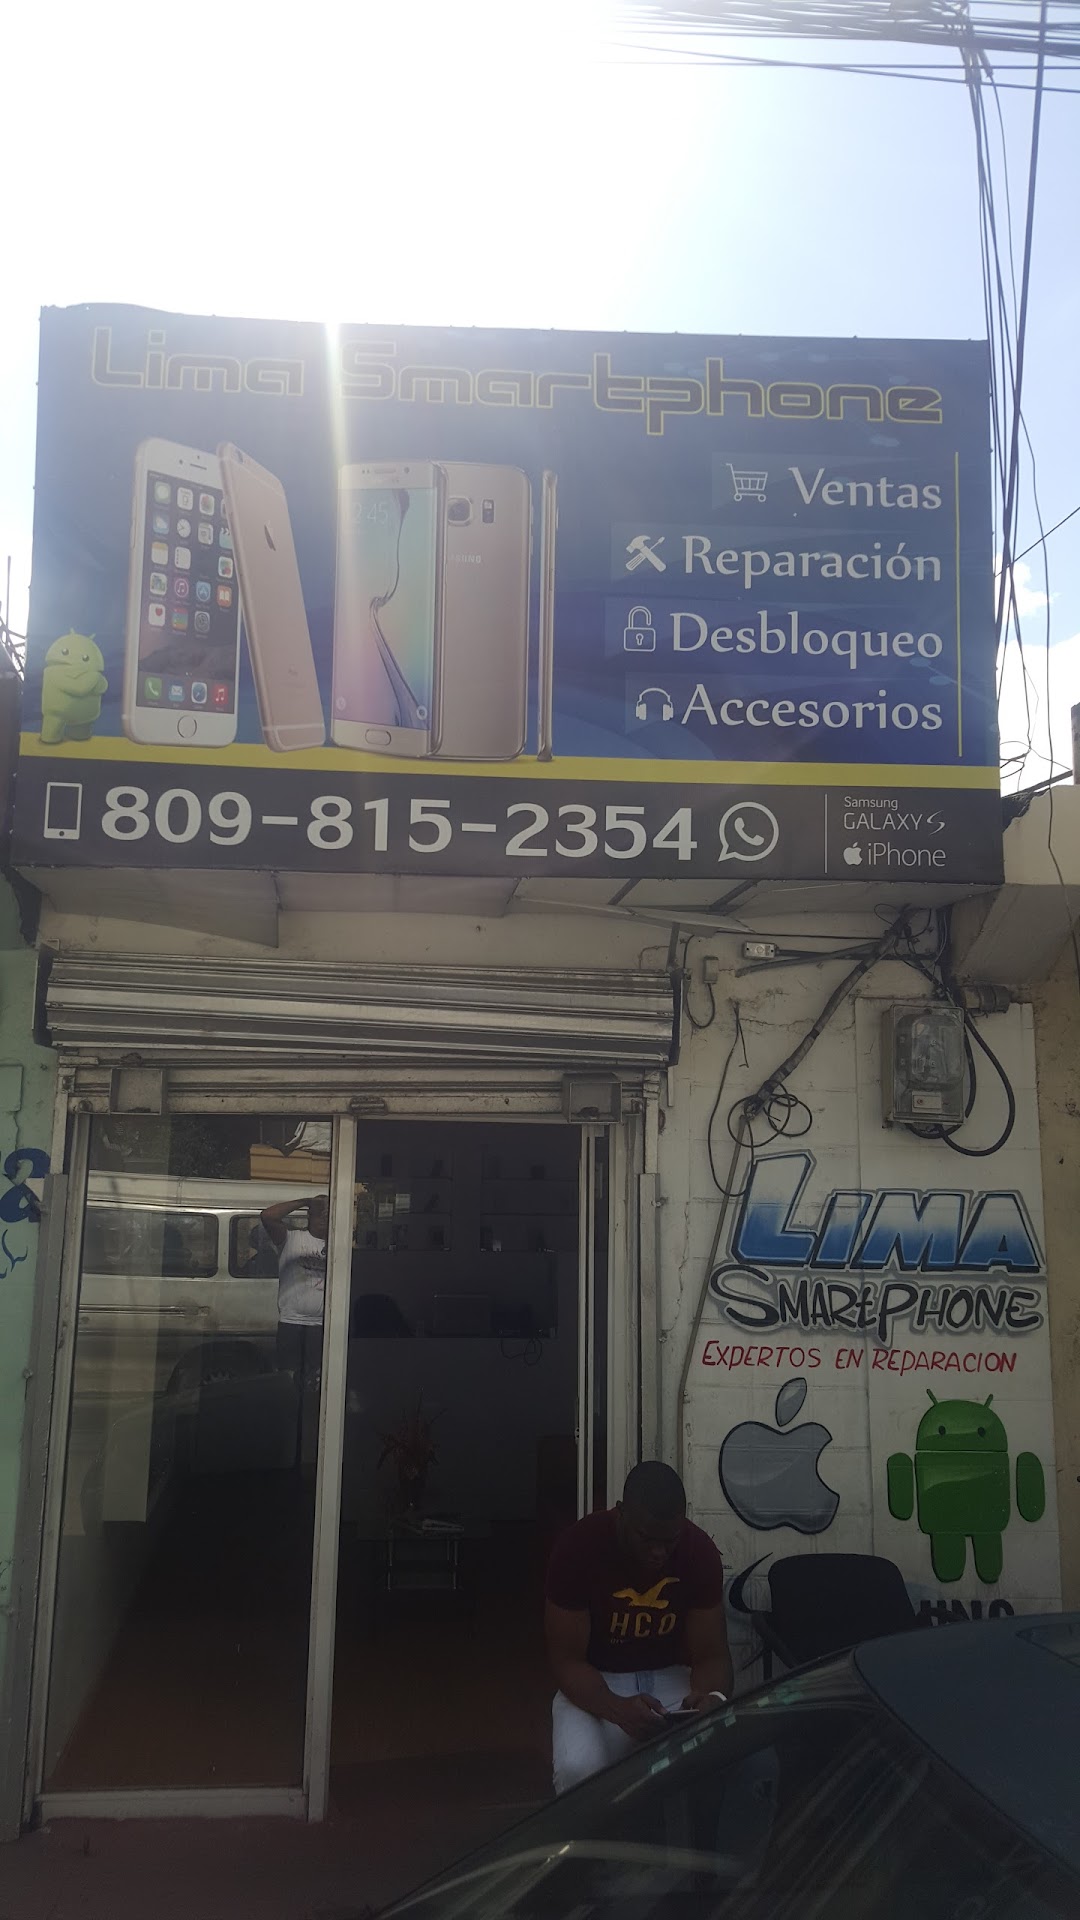 Lima Smartphone